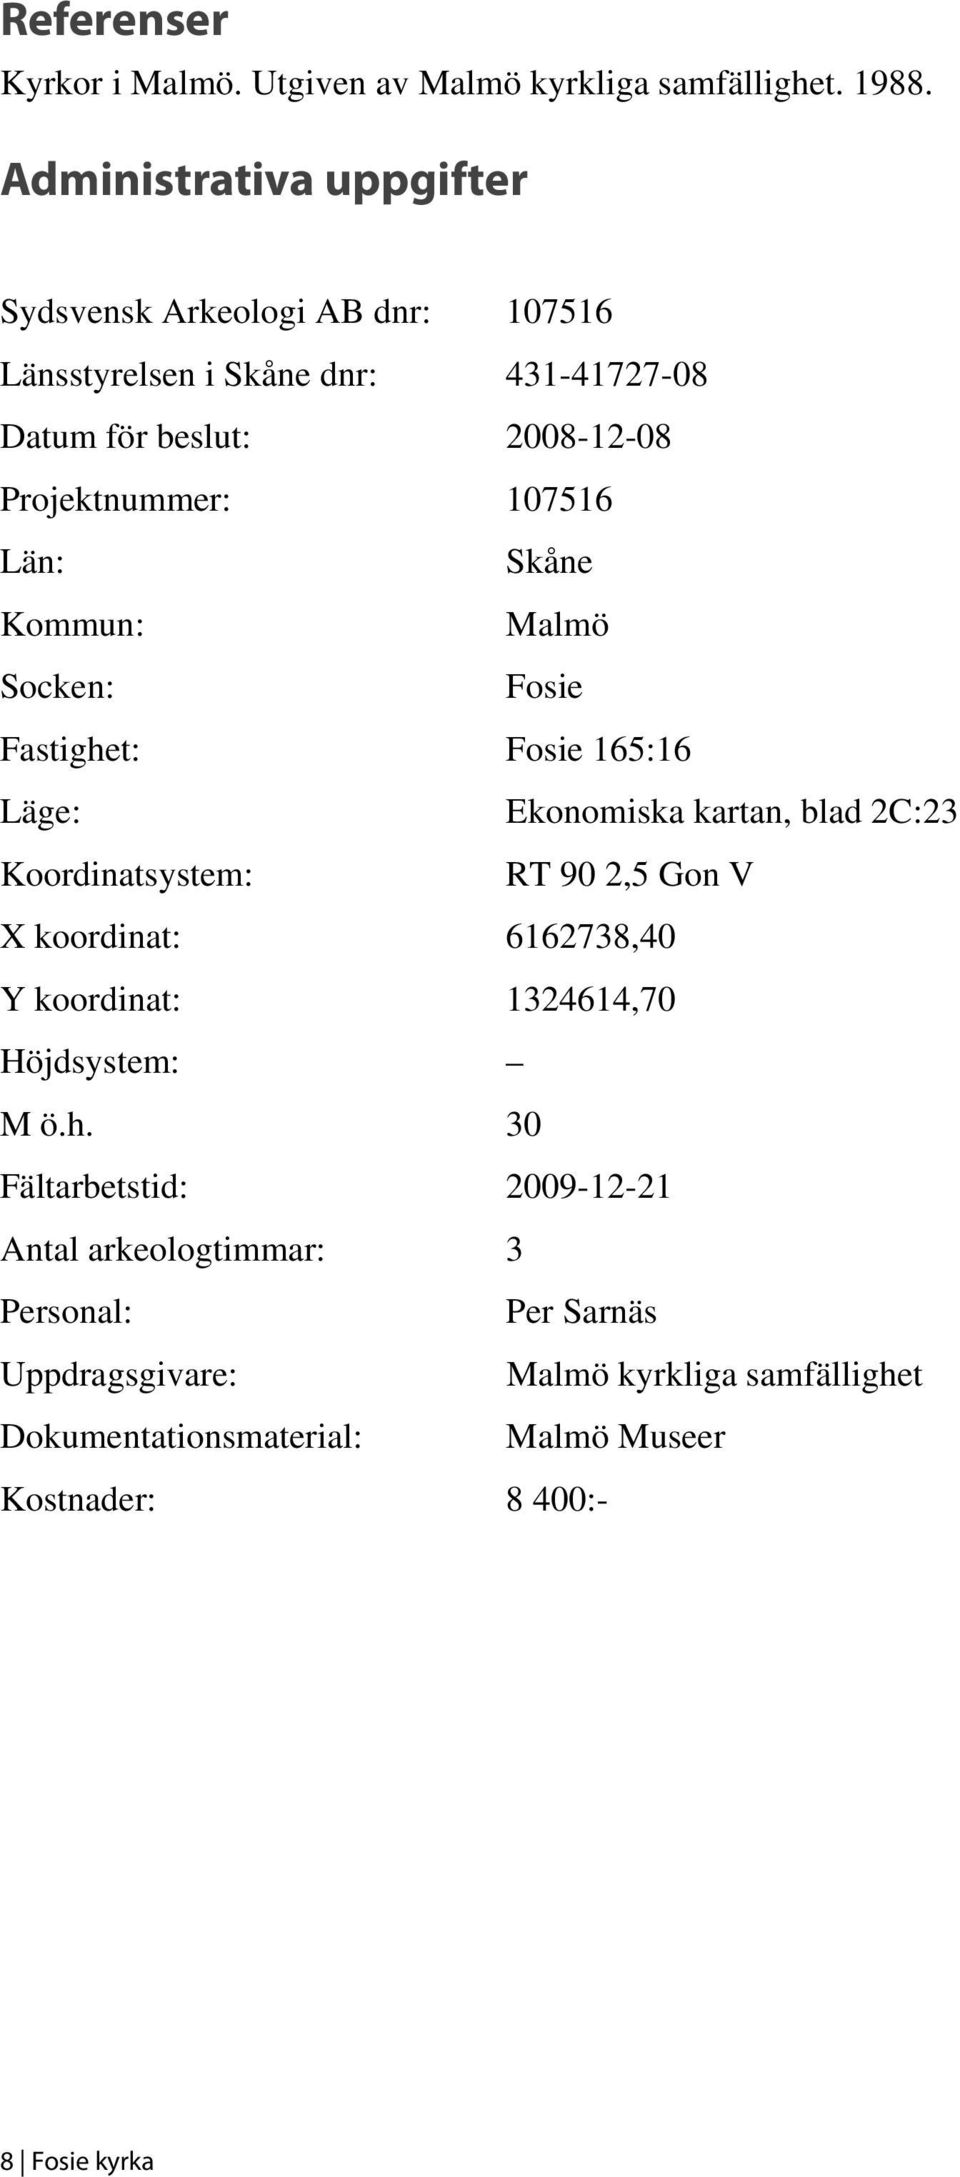 Län: Skåne Kommun: Malmö Socken: Fosie Fastighet: Fosie 165:16 Läge: Ekonomiska kartan, blad 2C:23 Koordinatsystem: RT 90 2,5 Gon V X koordinat: